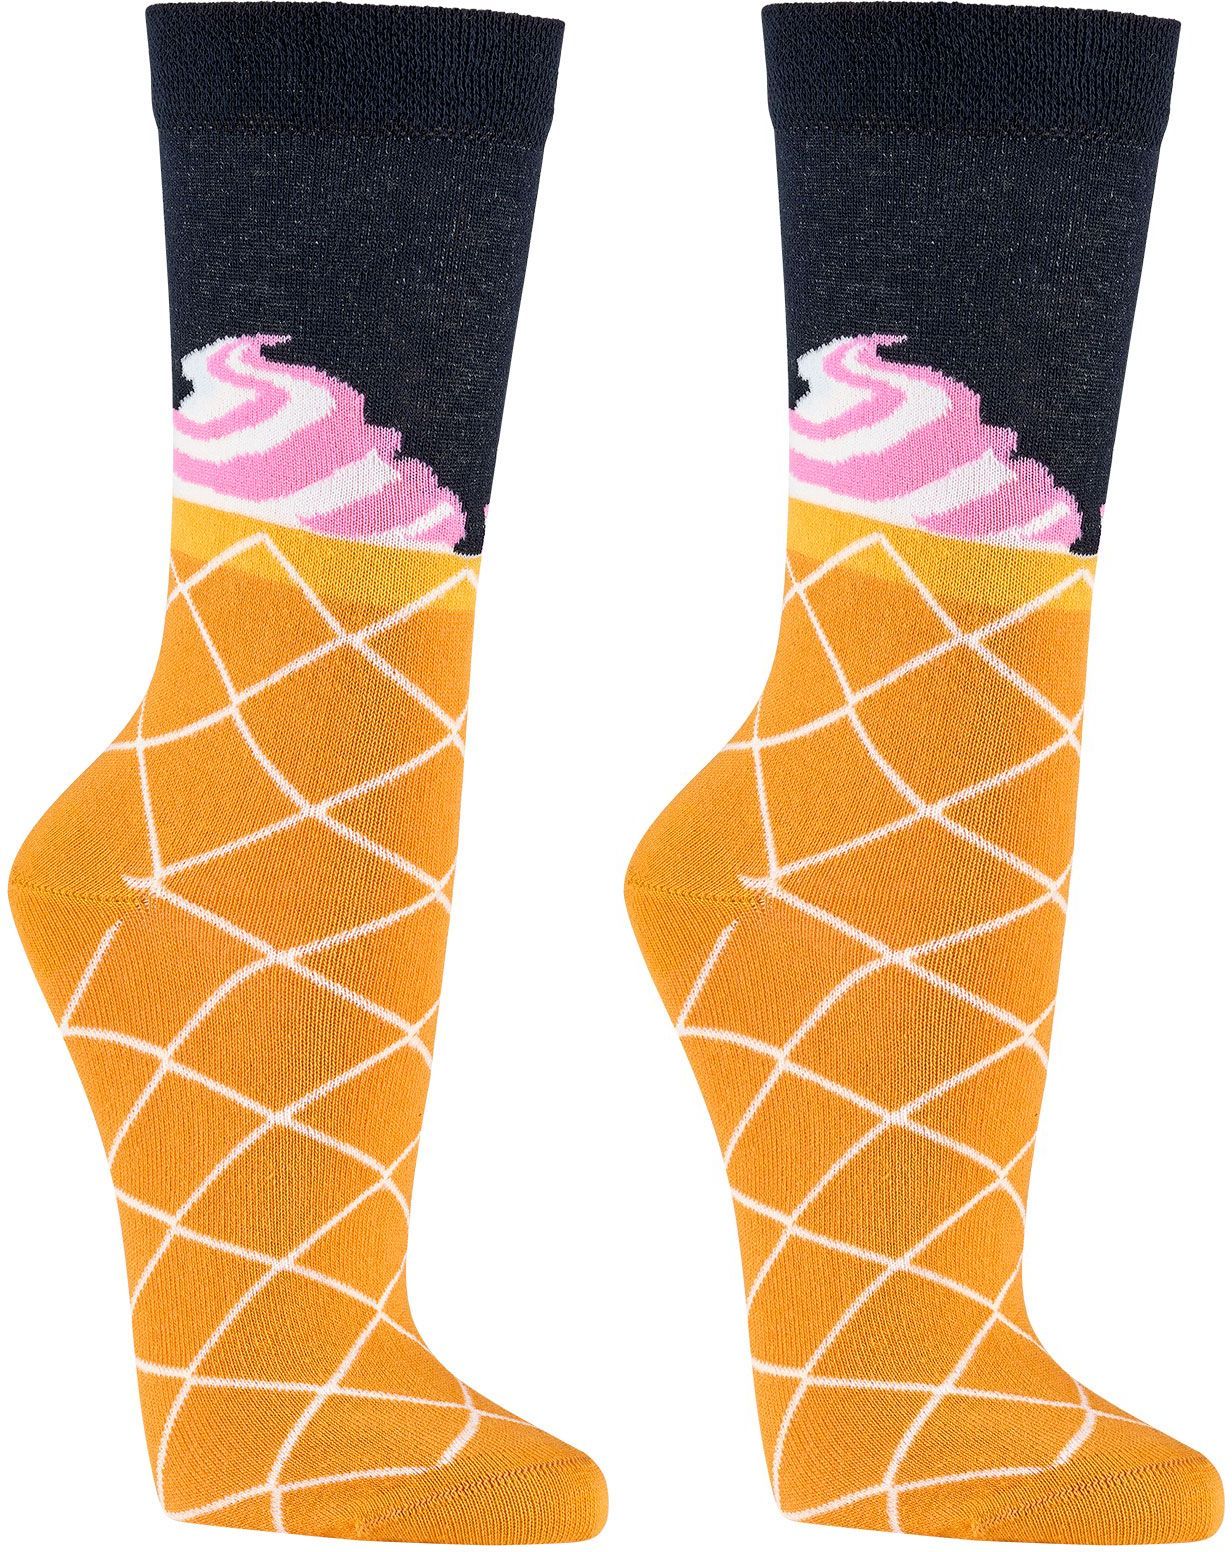 EISCREME Witzige Socken als Geschenkidee oder zum Selbertragen für Teenager, Damen und Herren, weiche Baumwolle, 2er- Bündel 